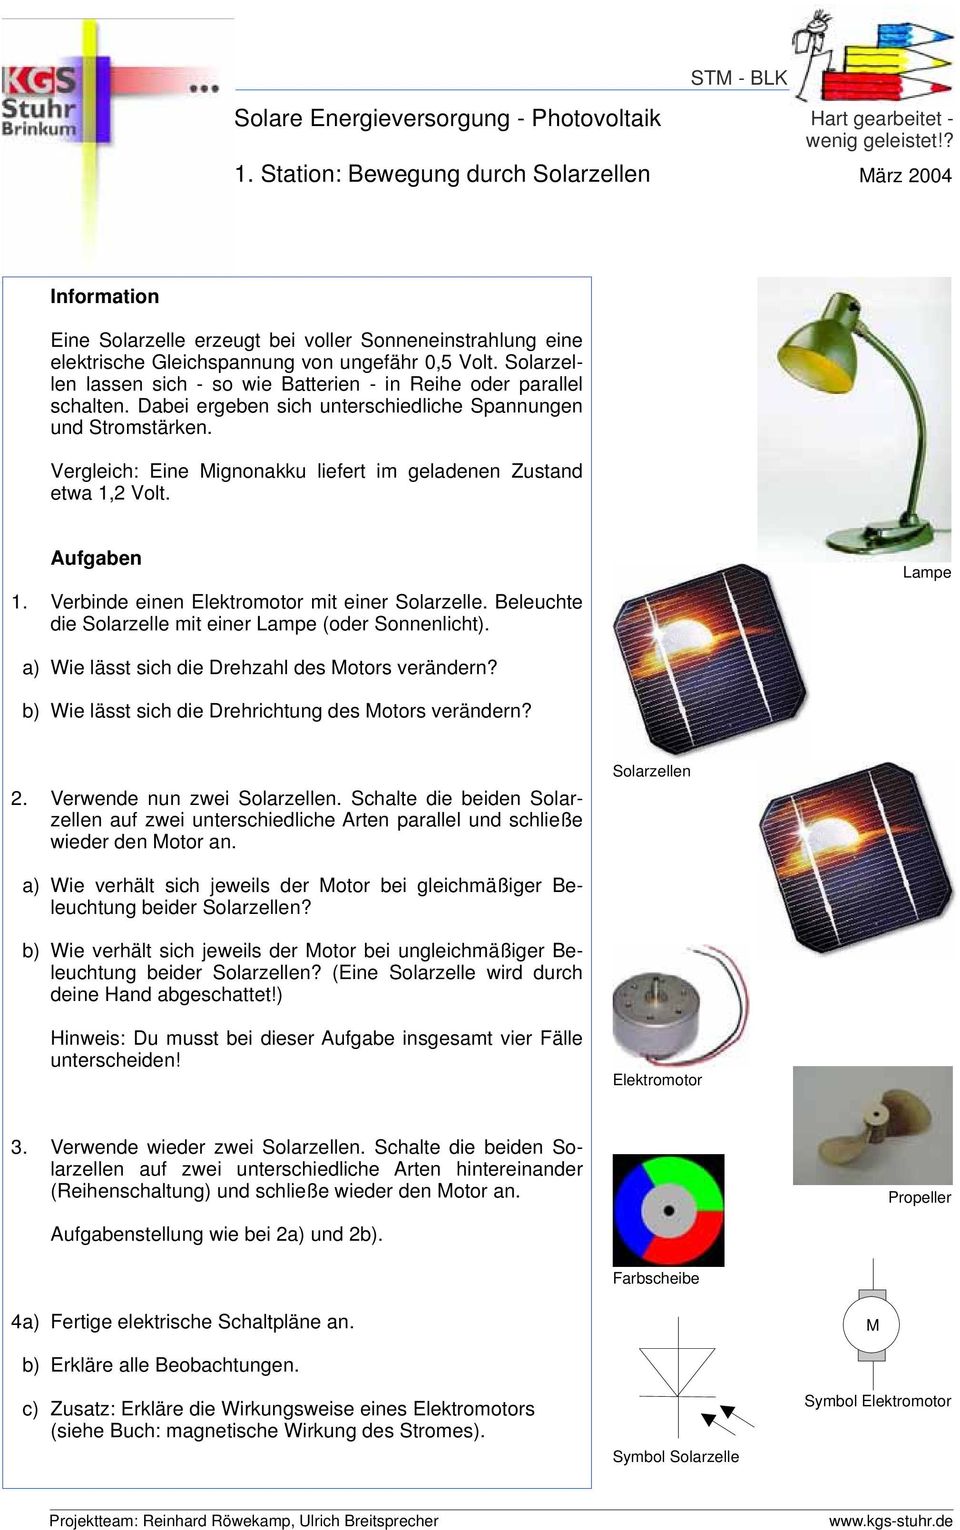 Vergleich: Eine Mignonakku liefert im geladenen Zustand etwa 1,2 Volt. 1. Verbinde einen mit einer Solarzelle. Beleuchte die Solarzelle mit einer Lampe (oder Sonnenlicht).